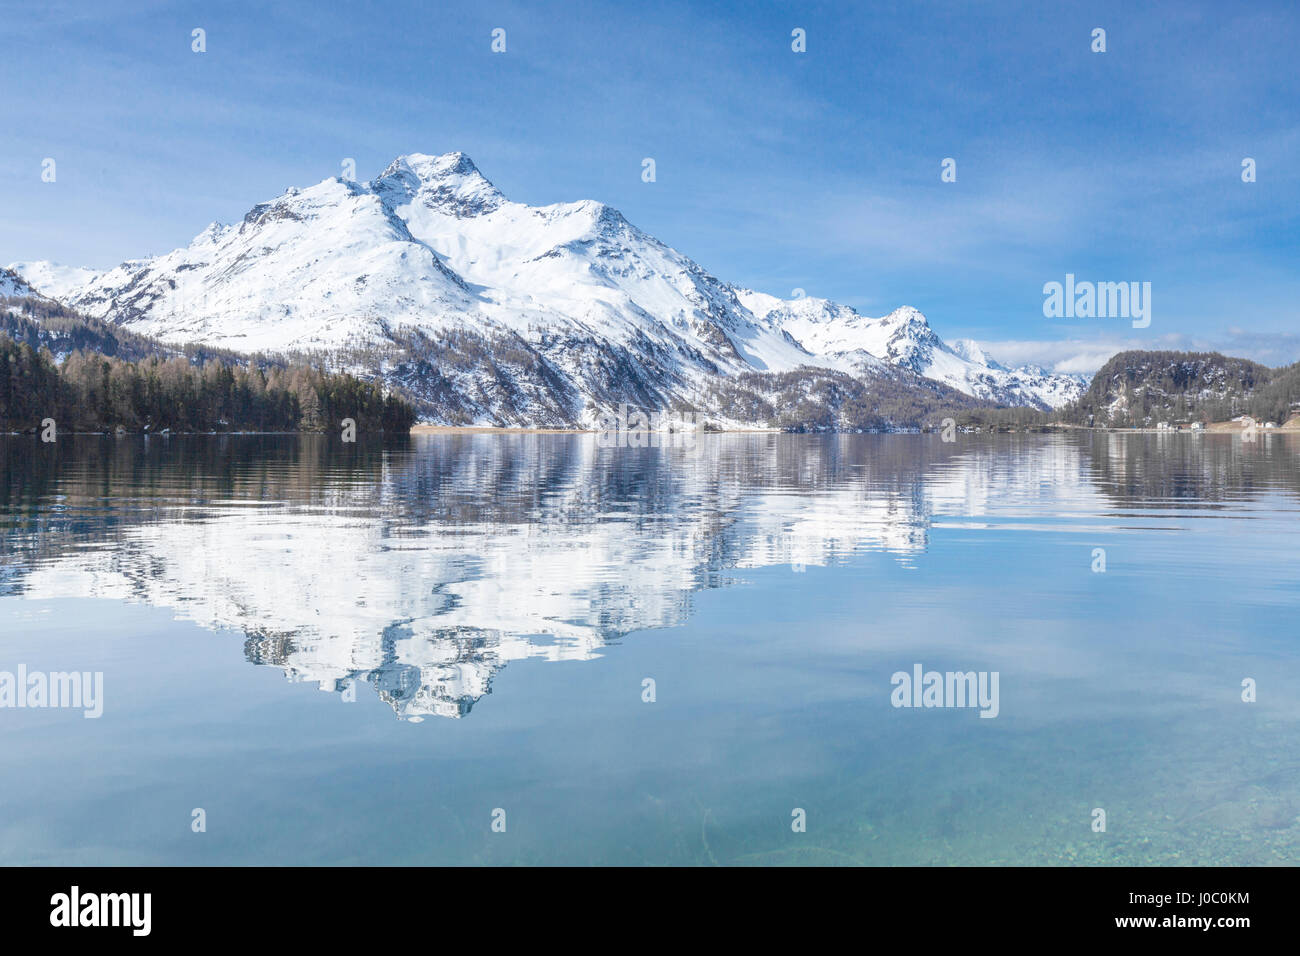 Vette innevate si riflette nelle limpide acque del lago di Sils, Maloja, Canton Grigioni, Engadina, Svizzera Foto Stock